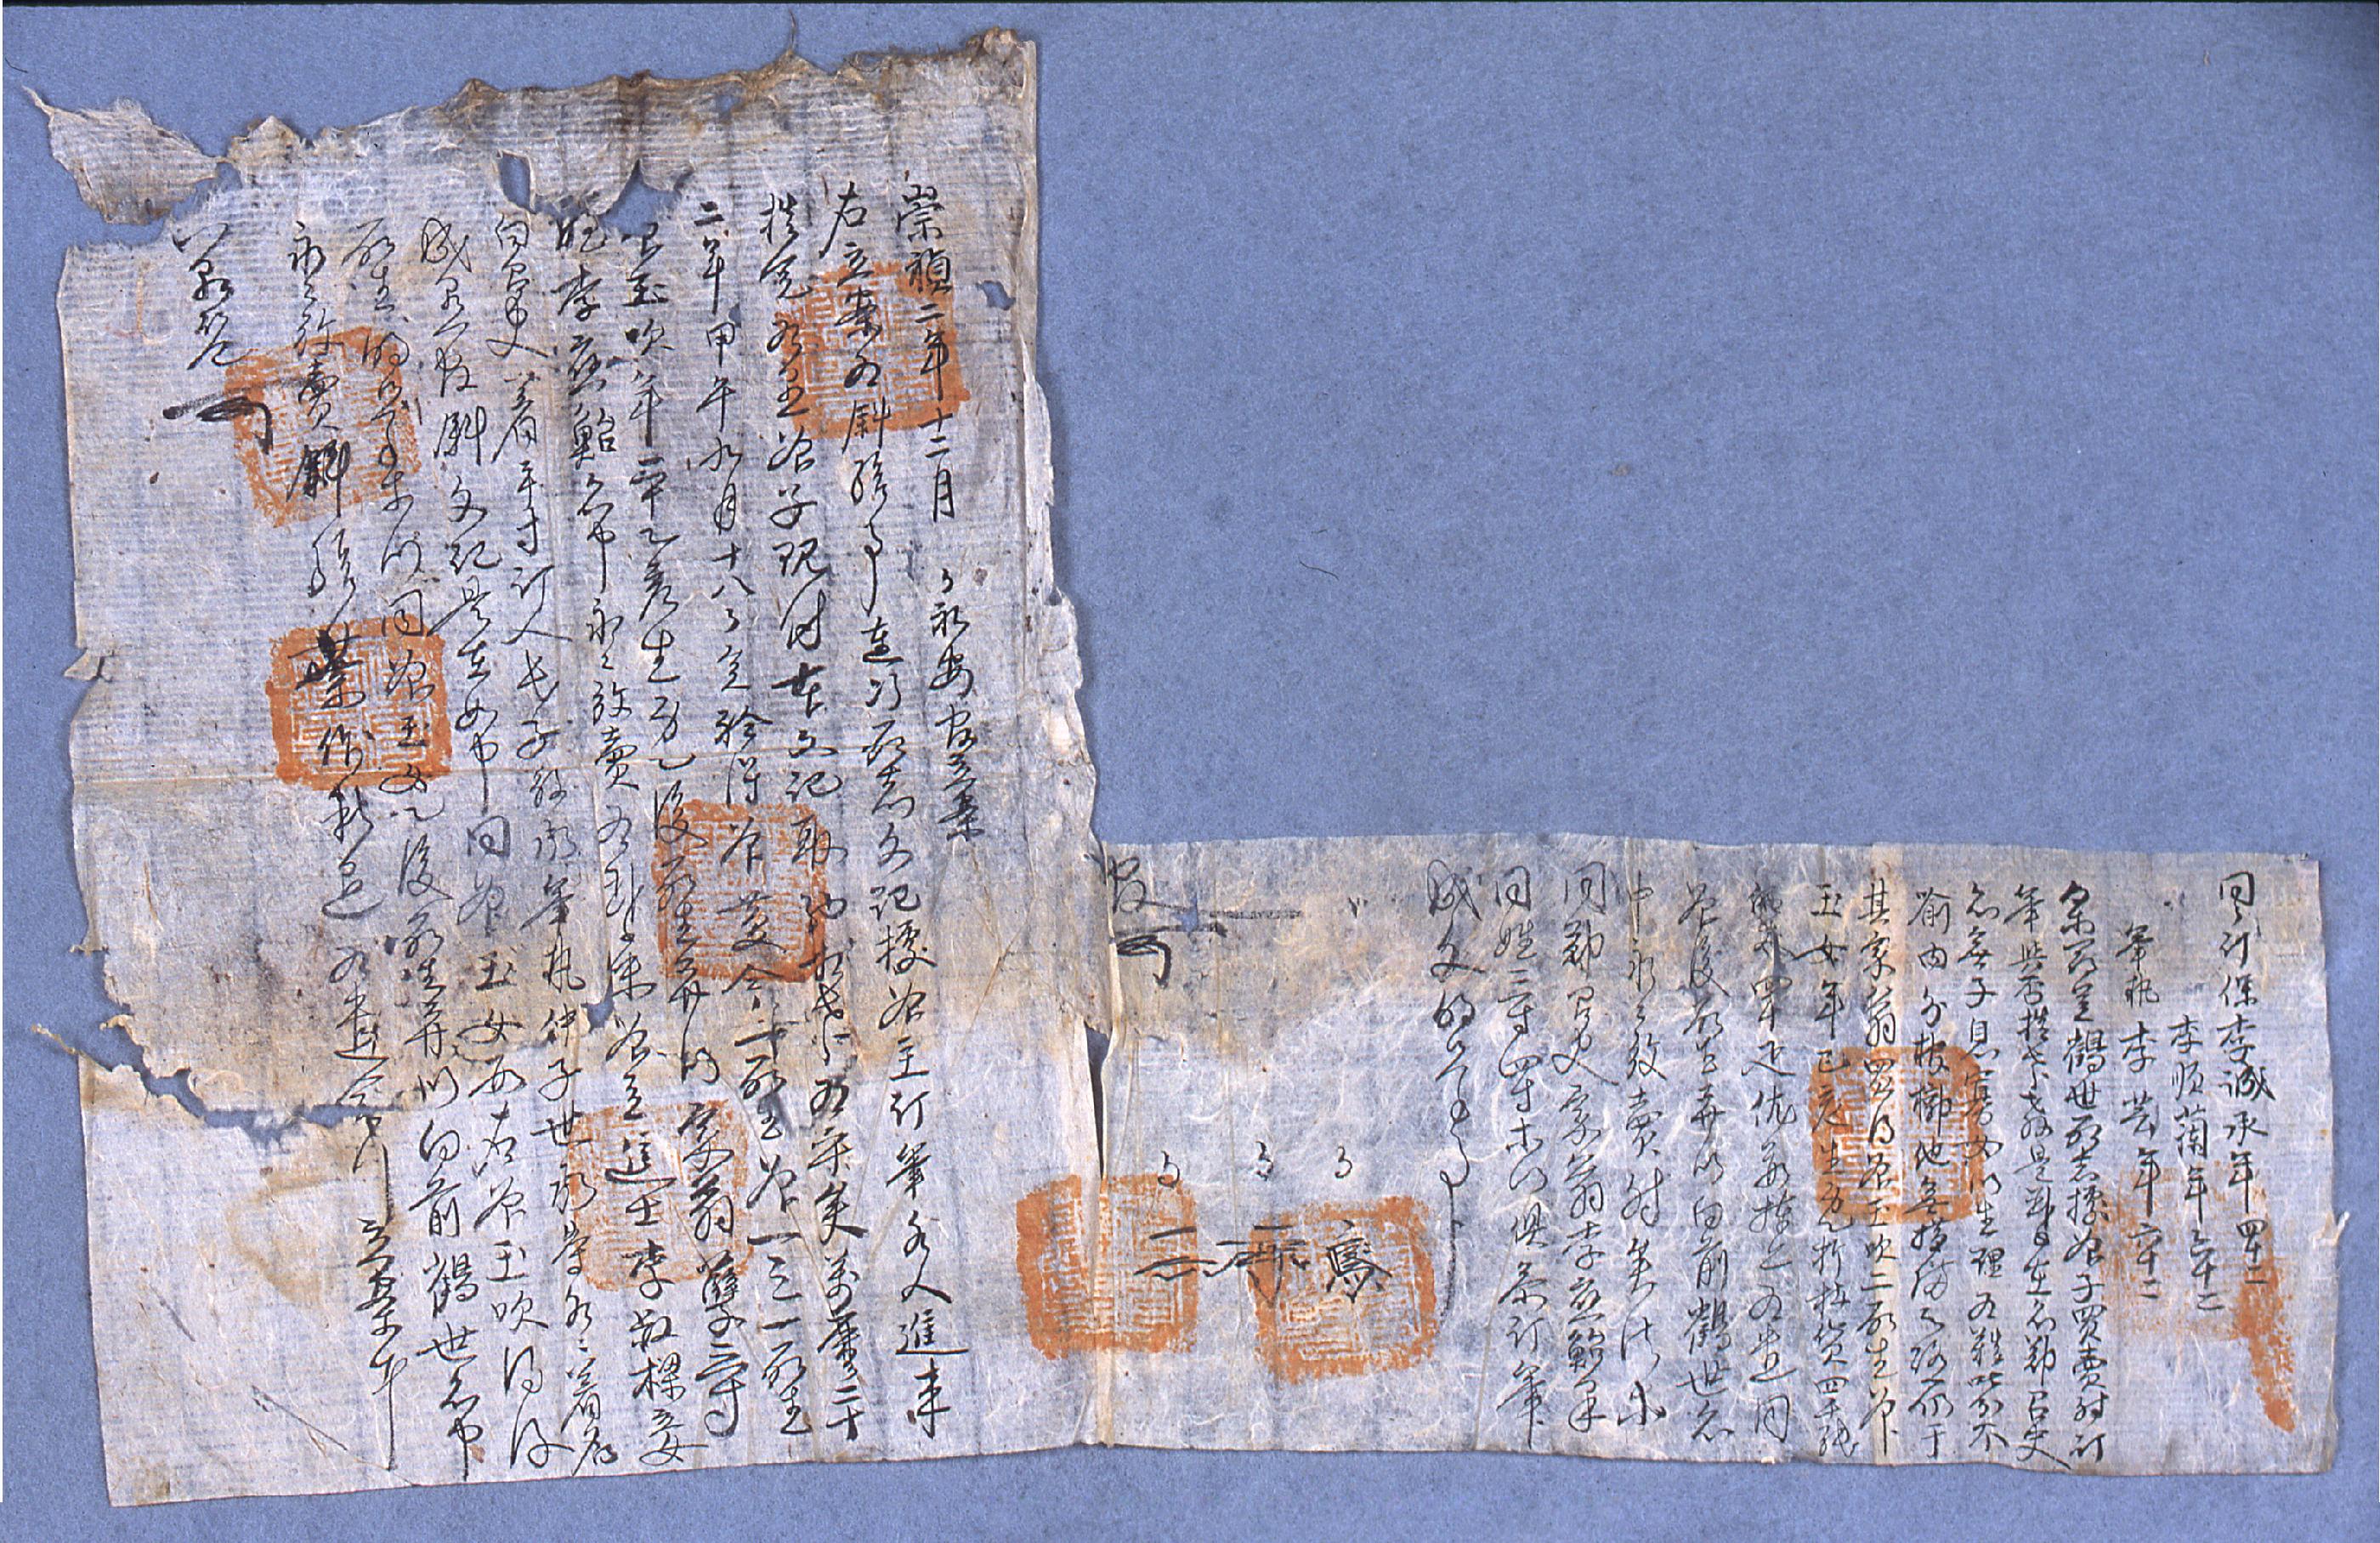 학세(鶴世)가 1629년에 작성한 노비매득 입안